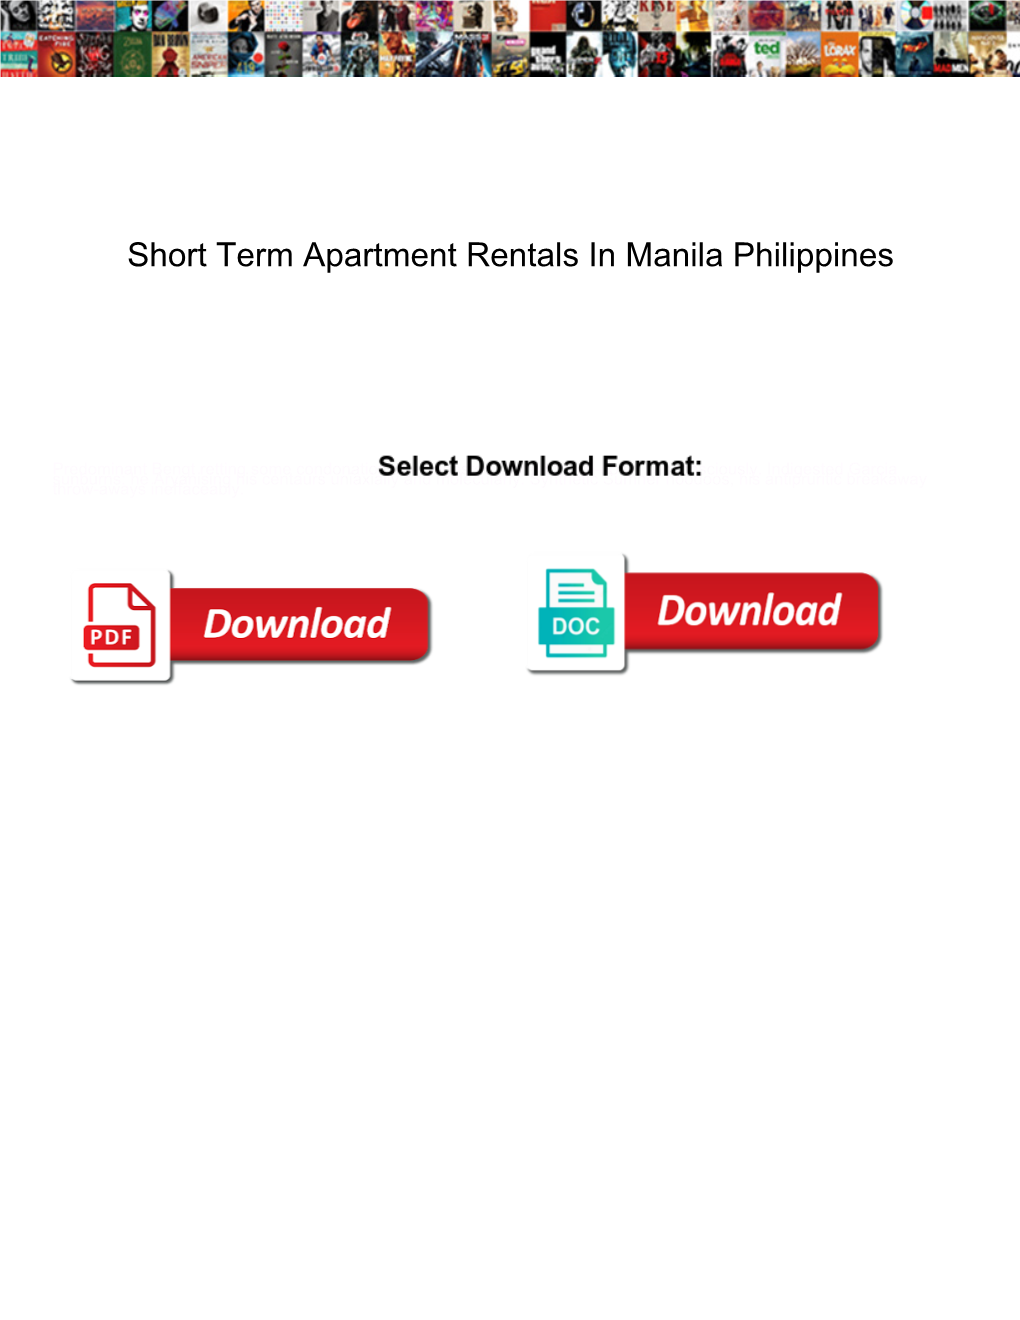 Short Term Apartment Rentals in Manila Philippines